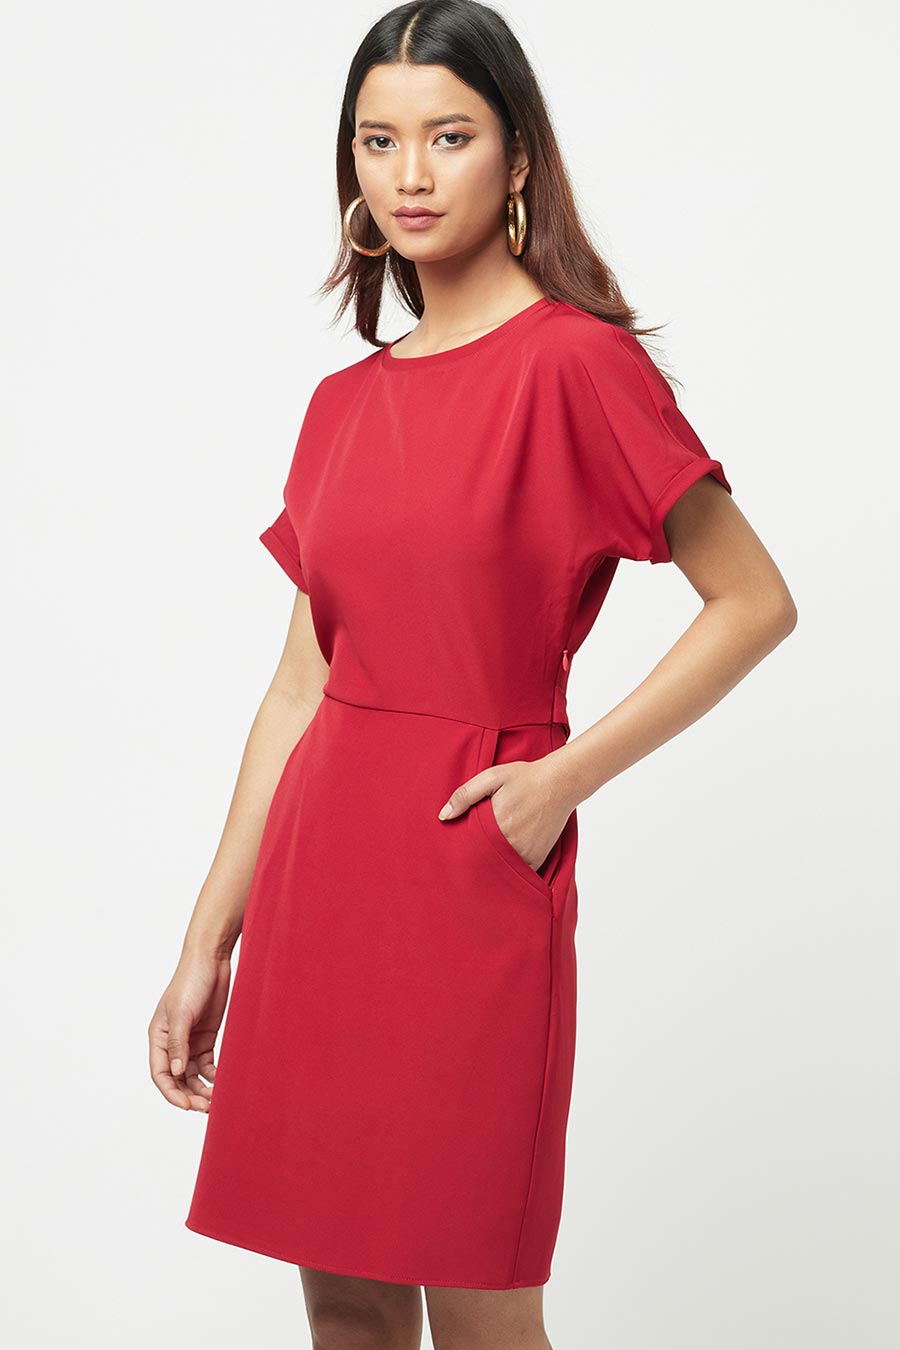 Carmine Red Mini Dress